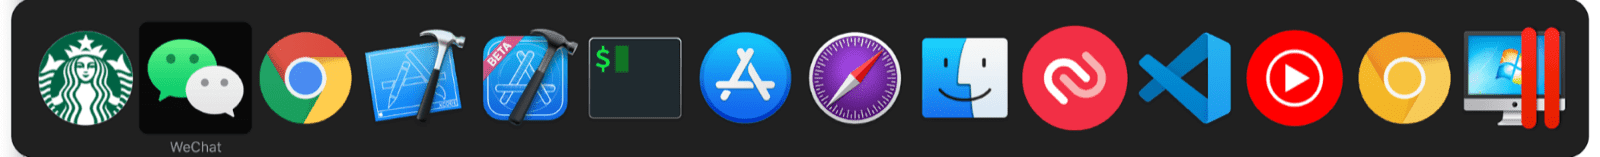 macOS çoklu görev değiştiricisi, normal macOS uygulamasının yanı sıra mini uygulamalar da içerir.